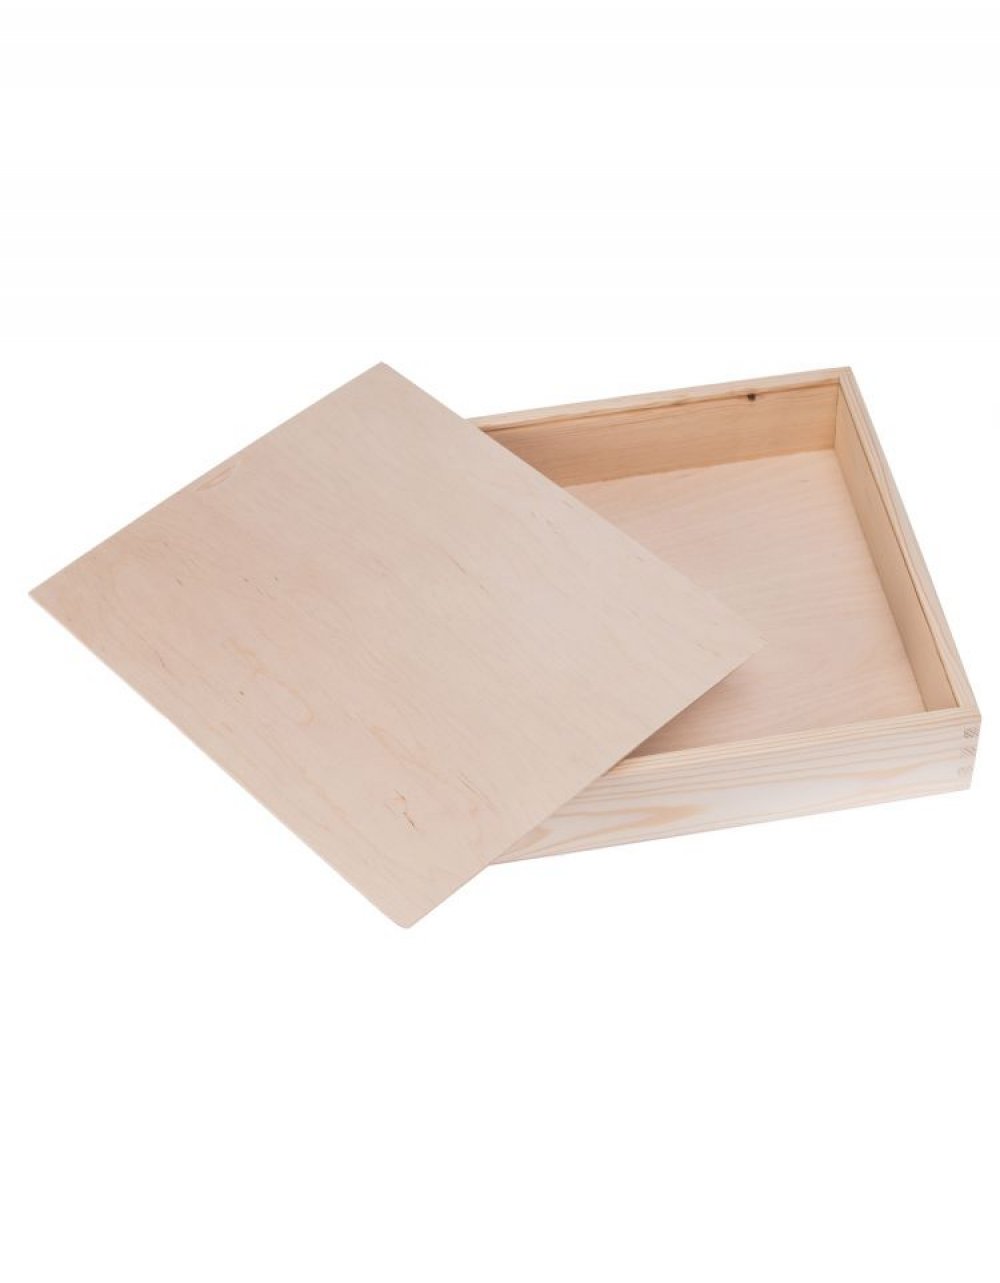 Dřevěný box na fotky 25x19x5 cm